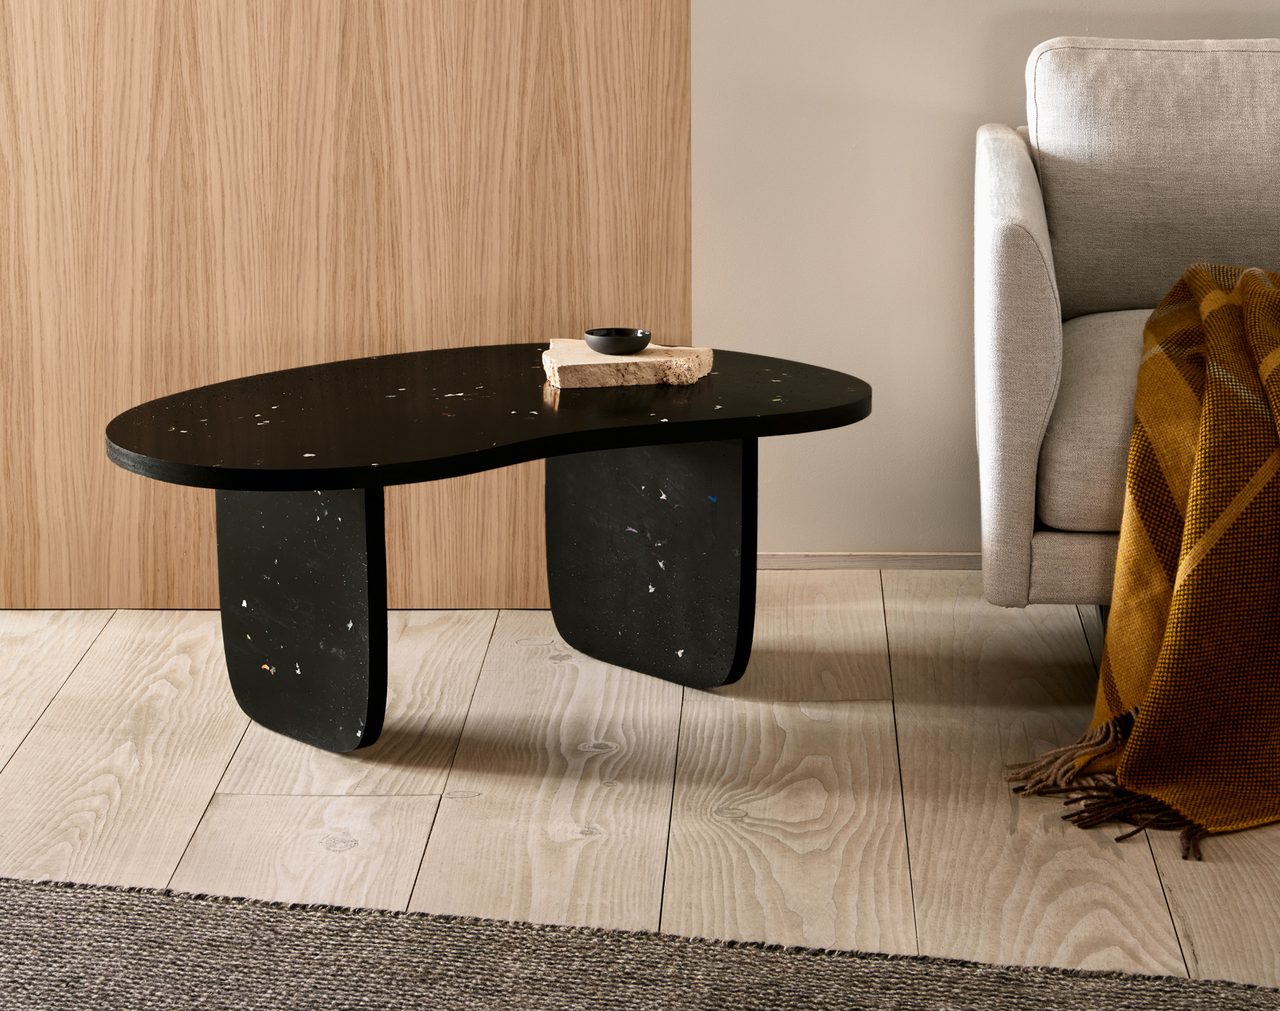 Outdoor table, Furniture, Chair, Rectangle, Wood, Comfort, Floor, Flooring, Desk